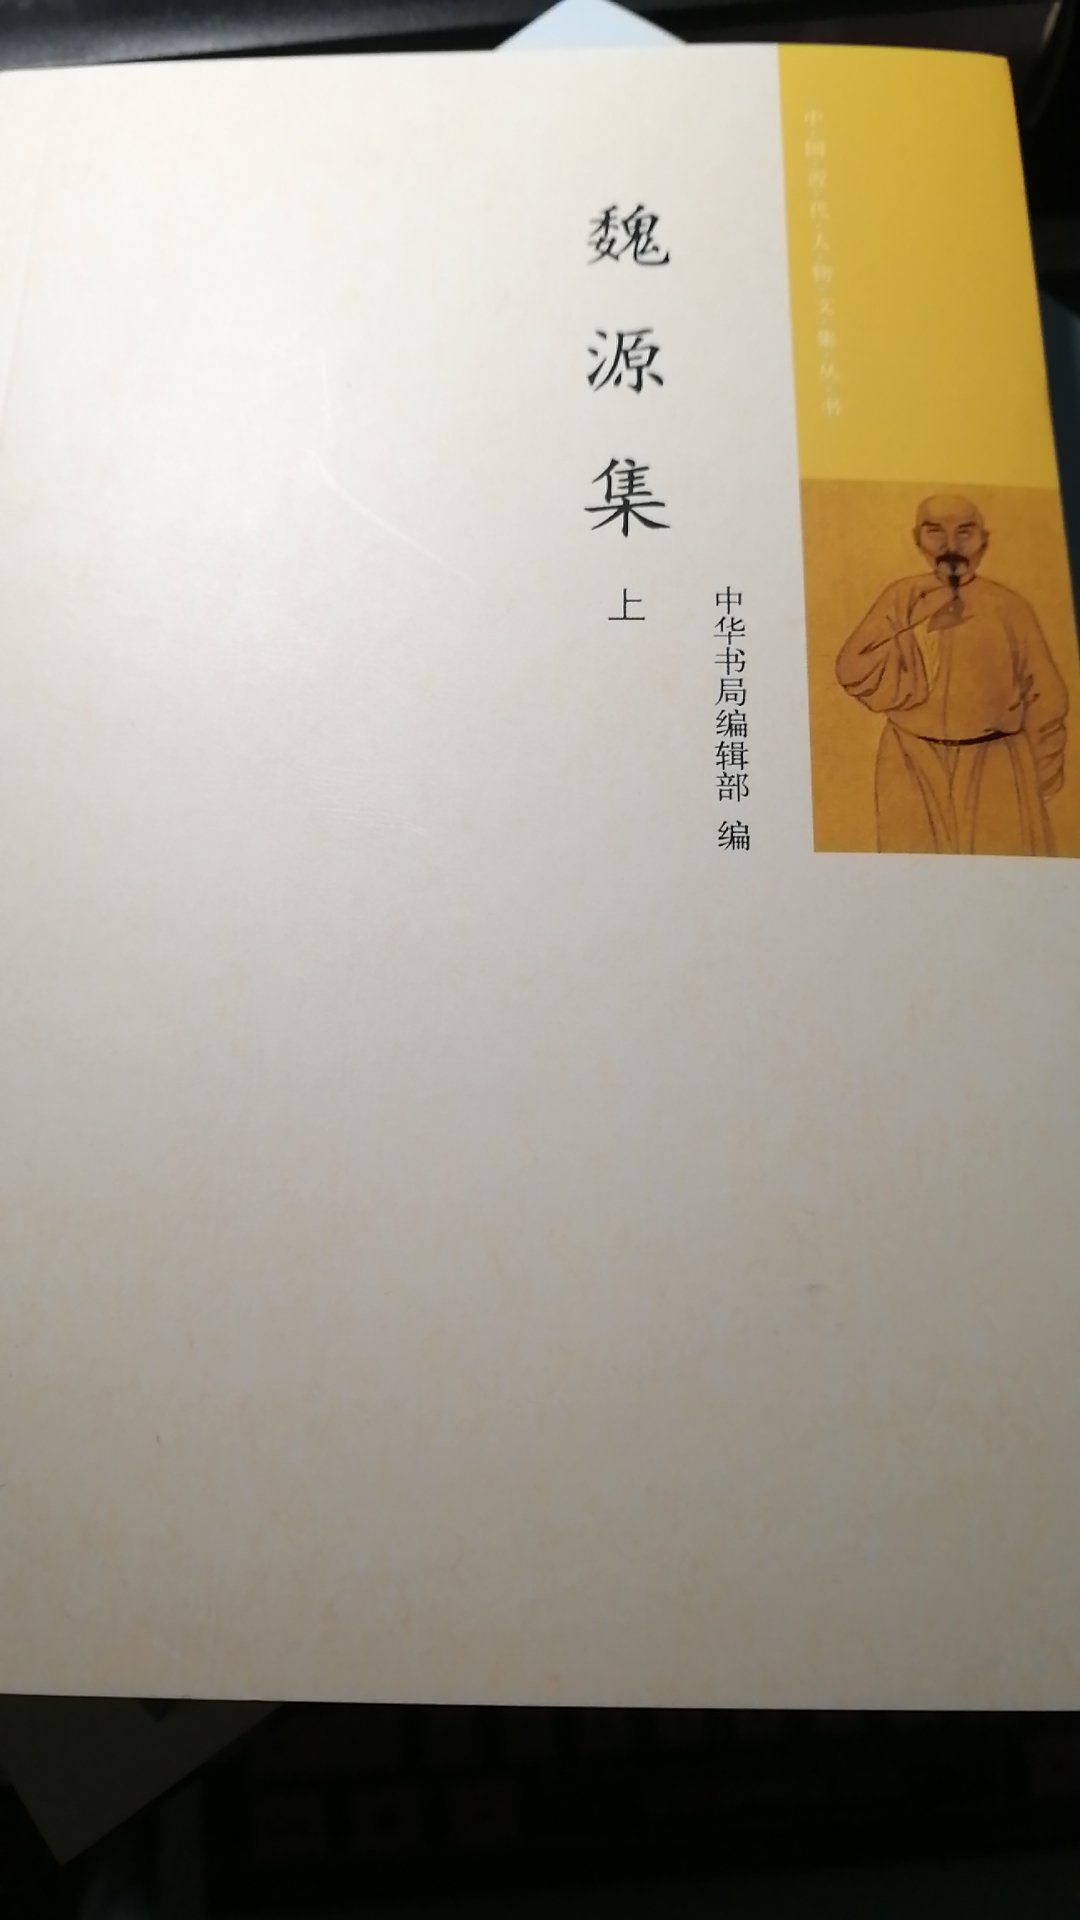 魏源近代睁眼看世界的人之一。中华书局把繁体竖排改成了简体横排，还挺好的。